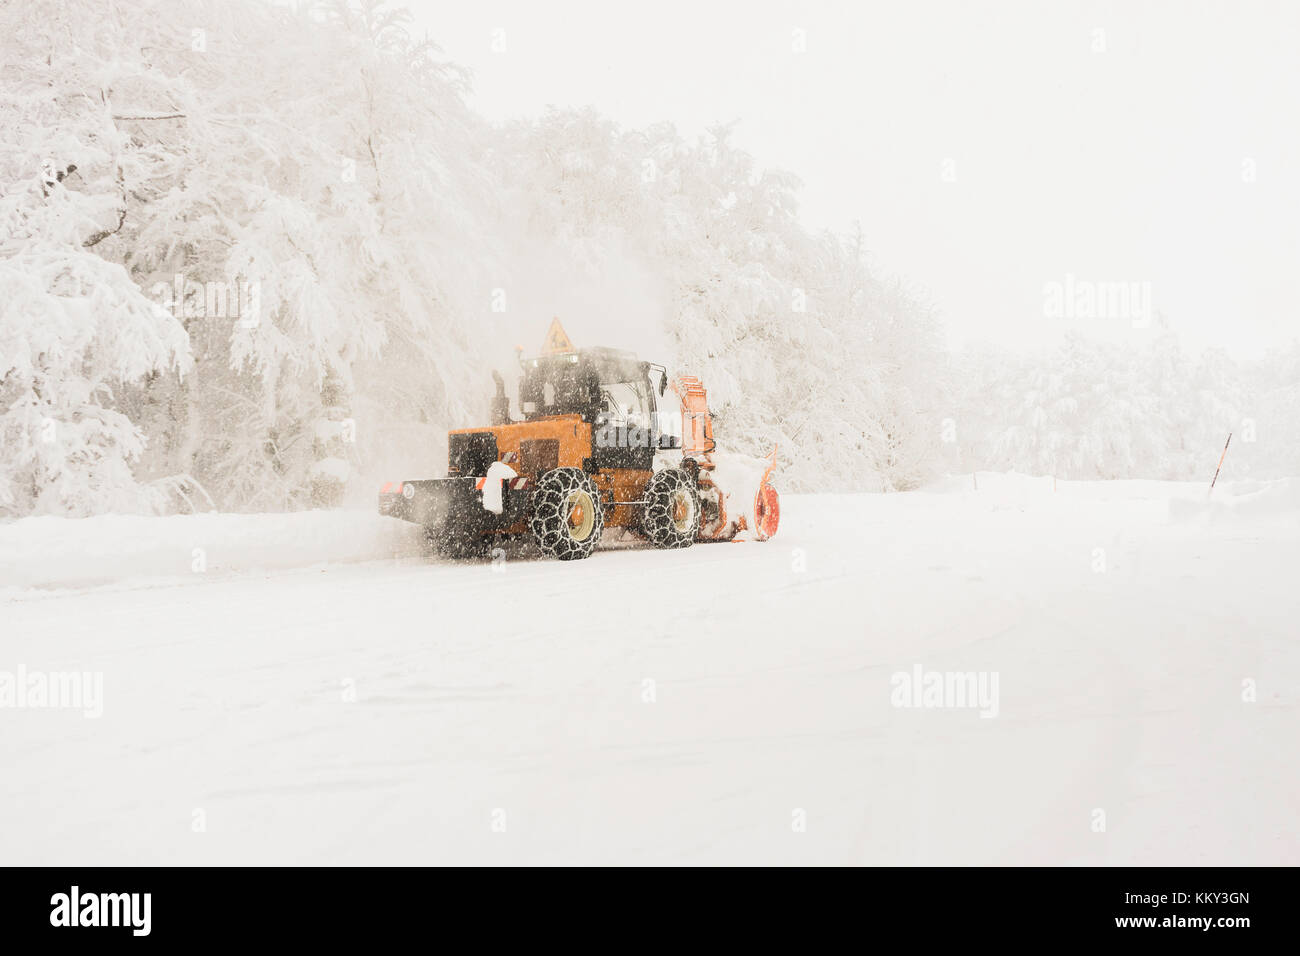 Ein pistenfahrzeug arbeiten, während es schneit, um die Straße für den Verkehr zu erhalten; Vogesen im Winter, Frankreich. Stockfoto